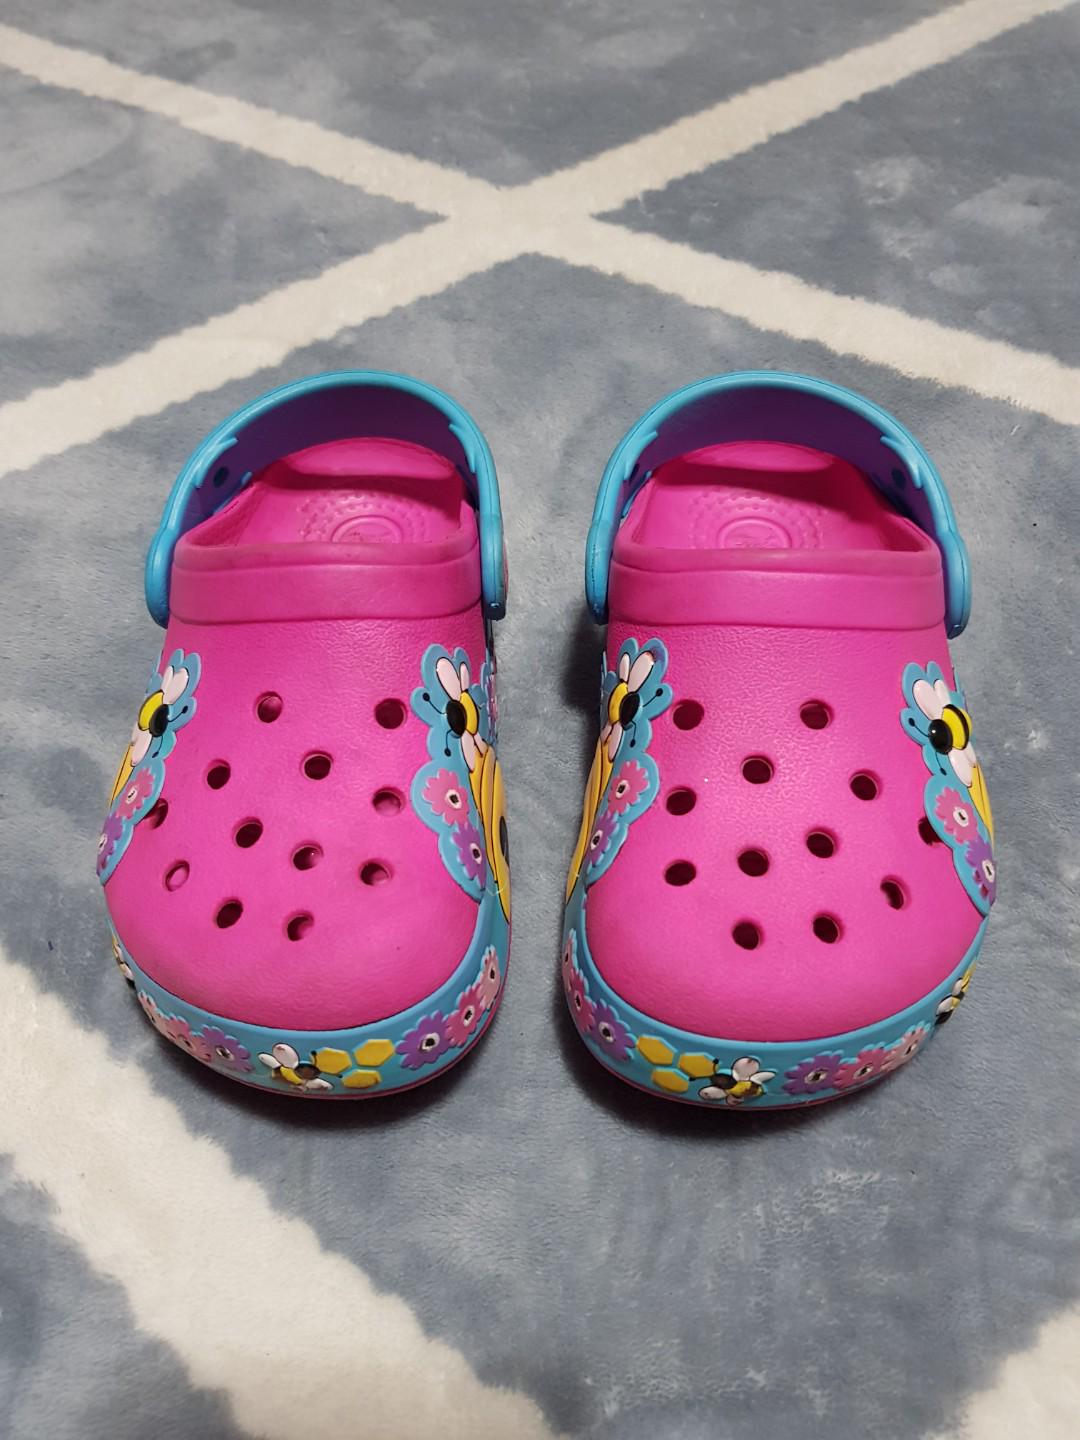 light up crocs for kids